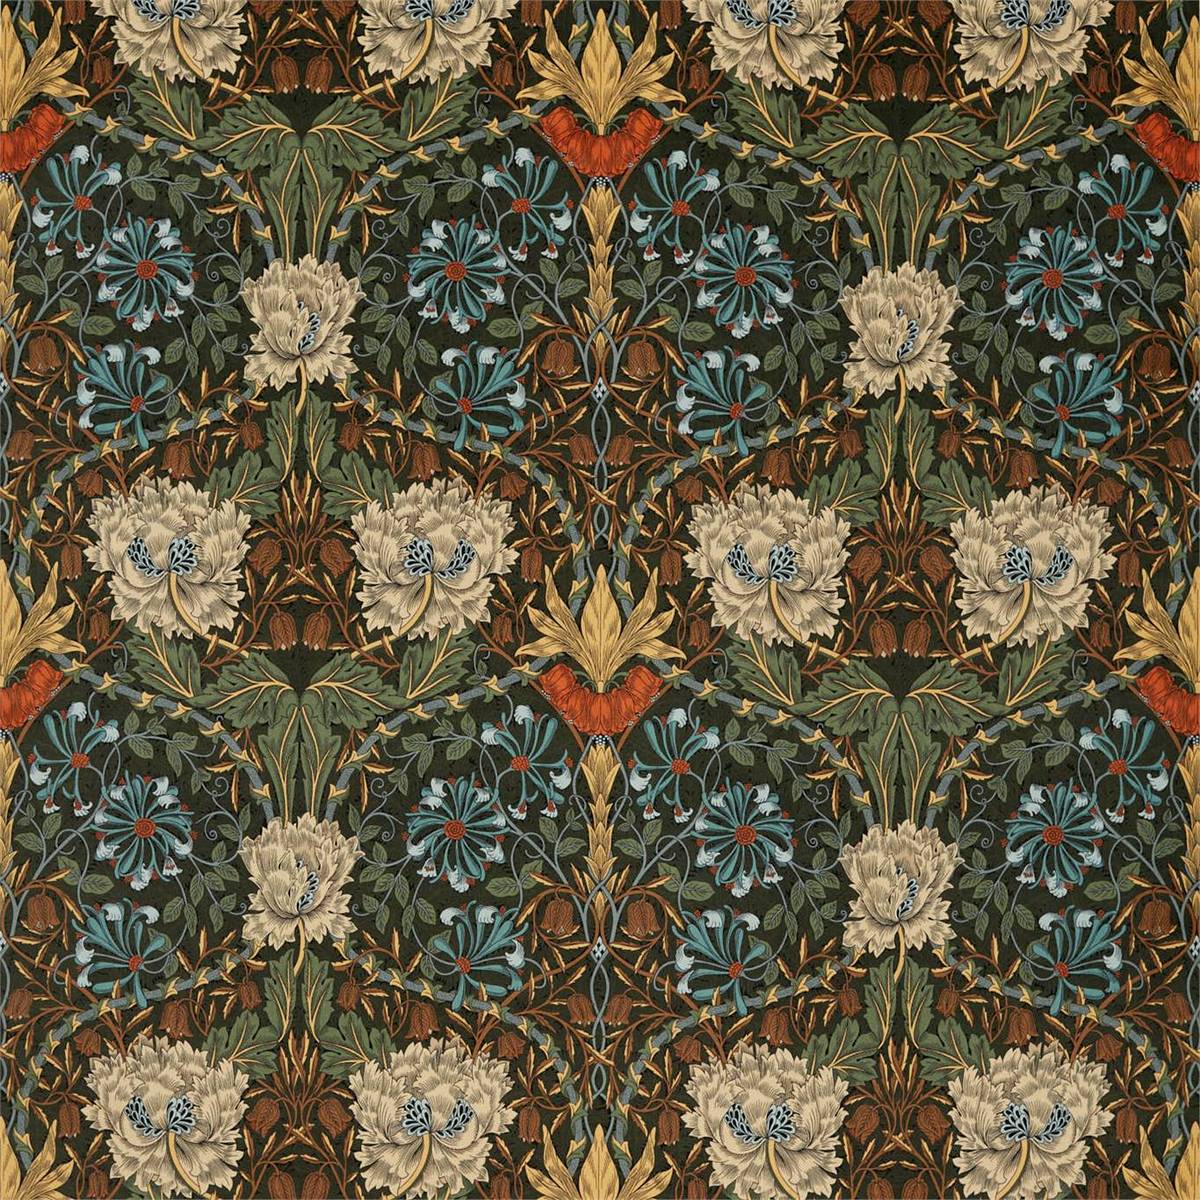 Honeysuckle Tulip Velvet Forest/Chestnut Fabric by William Morris & Co.